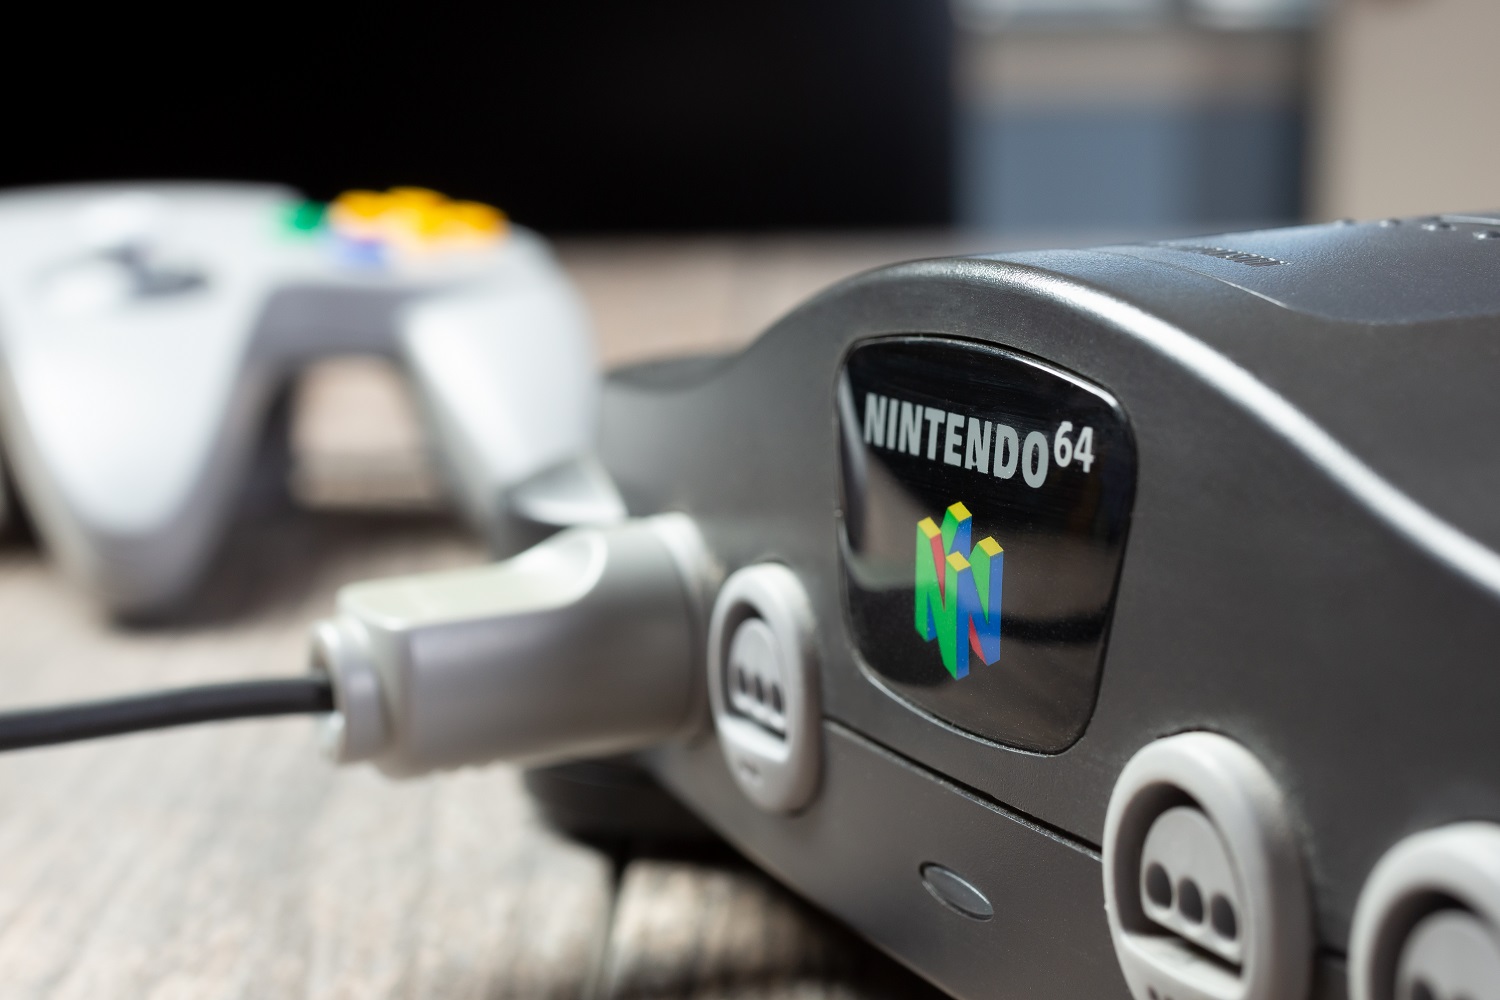 Porta do controlador no Nintendo 64.